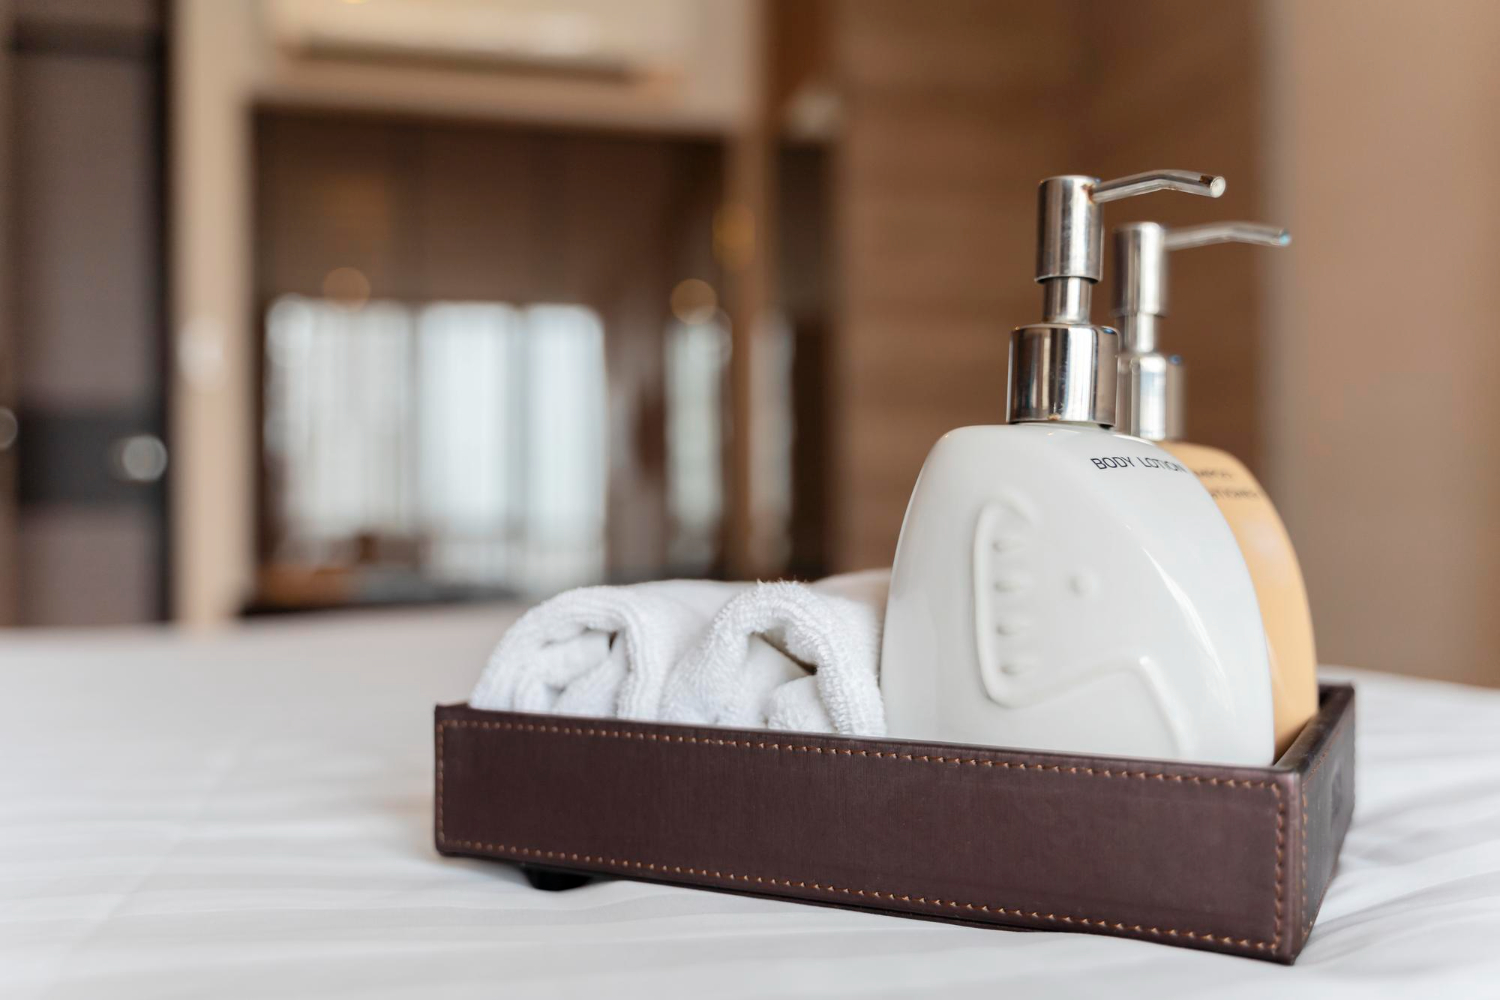 เคล็ดลับการดูแลรักษาอุปกรณ์อาบน้ำสำหรับโรงแรม : สะอาด ปลอดภัย ใช้งานได้นาน post thumbnail image